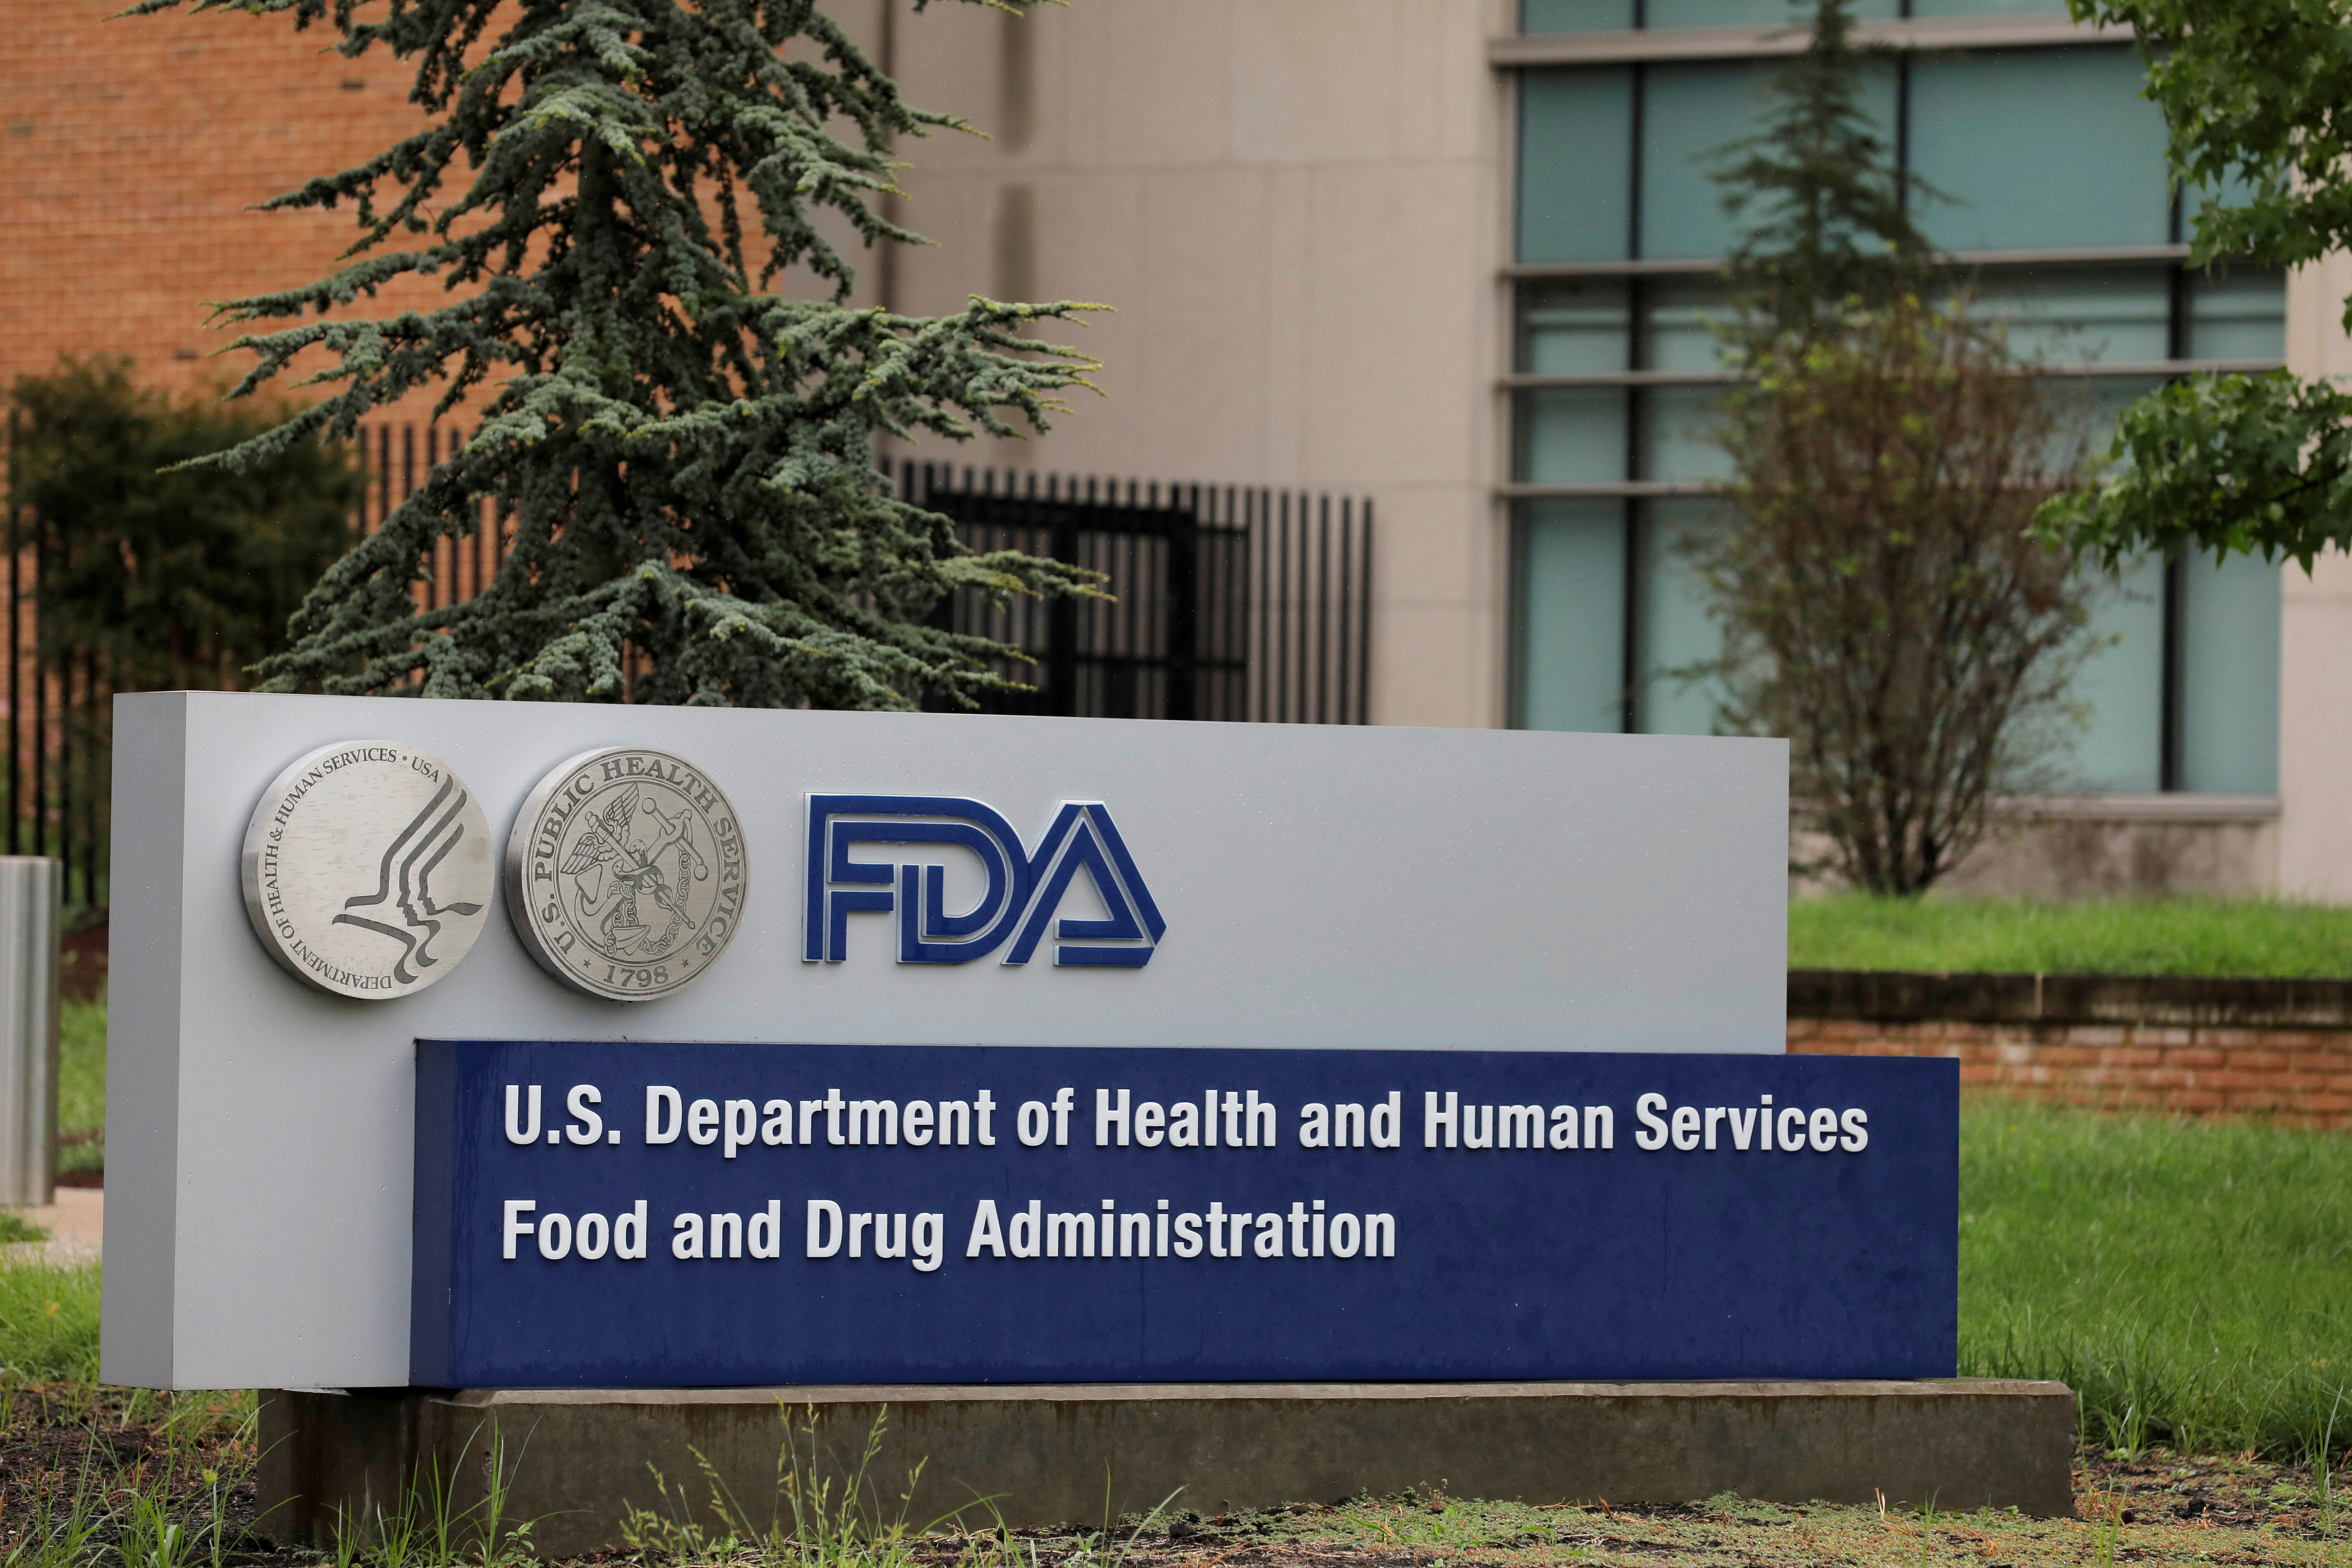 FOTO DE ARCHIVO: Sede de la Administración de Alimentos y Medicamentos (FDA) en White Oak, Maryland, Estados Unidos, el 29 de agosto de 2020. REUTERS/Andrew Kelly